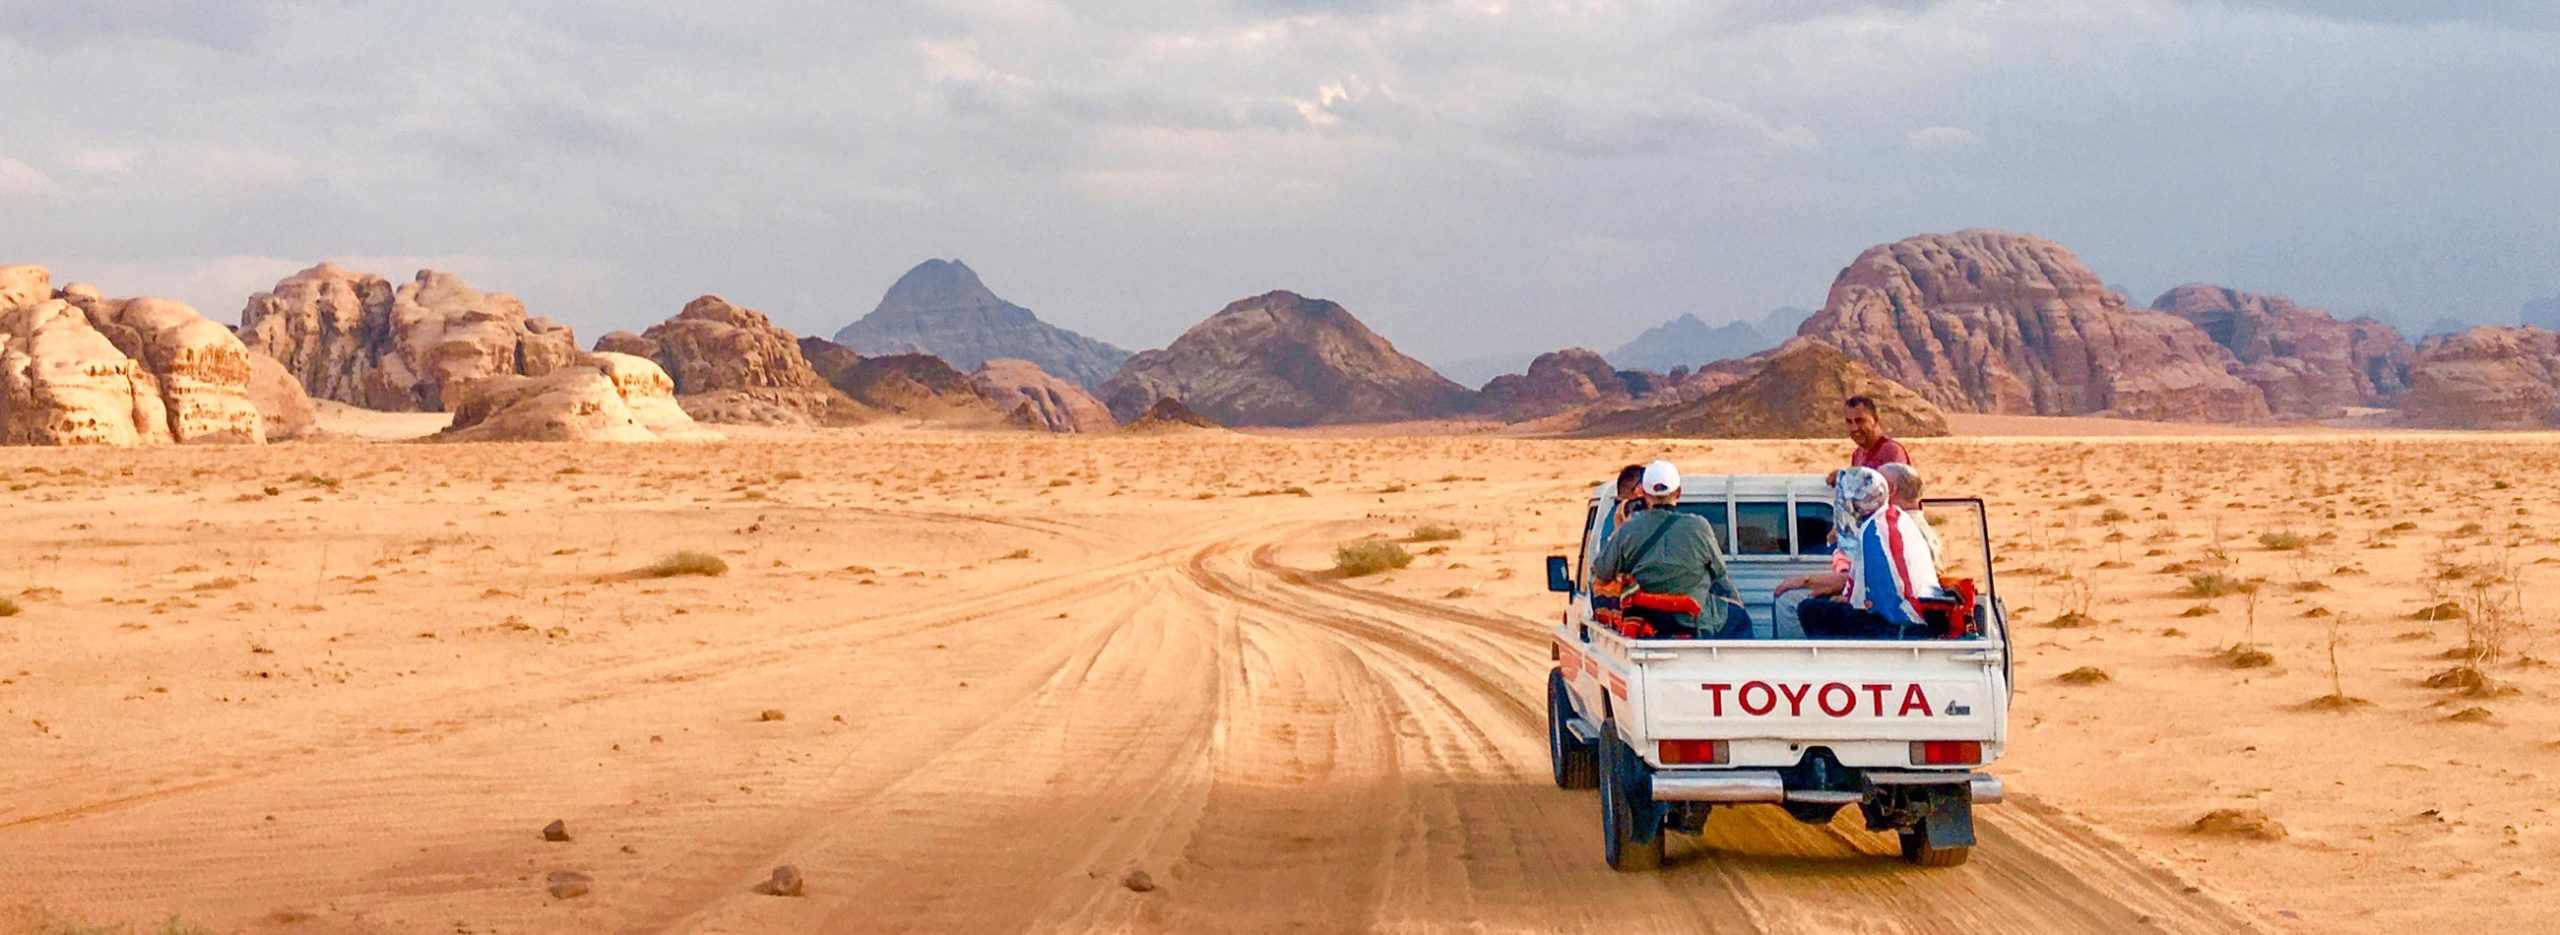 Jeep, Wadi Rum, Jordanie / Jeep, Wadi Rum, Jordan